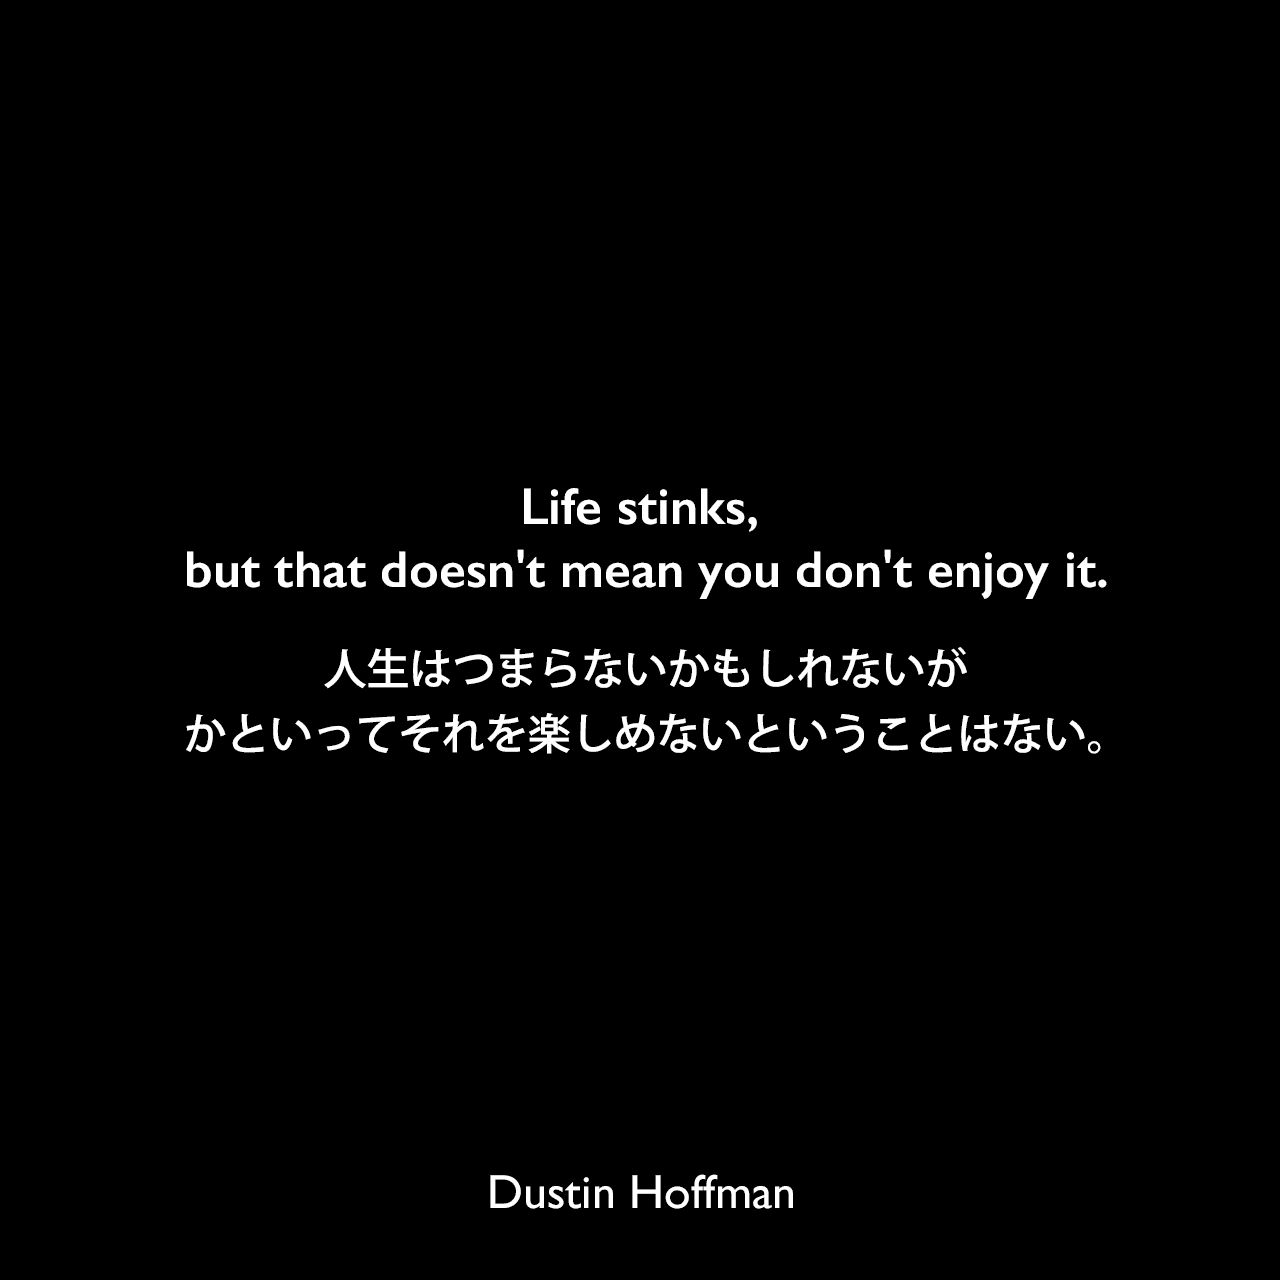 Life stinks, but that doesn't mean you don't enjoy it.人生はつまらないかもしれないが、かといってそれを楽しめないということはない。